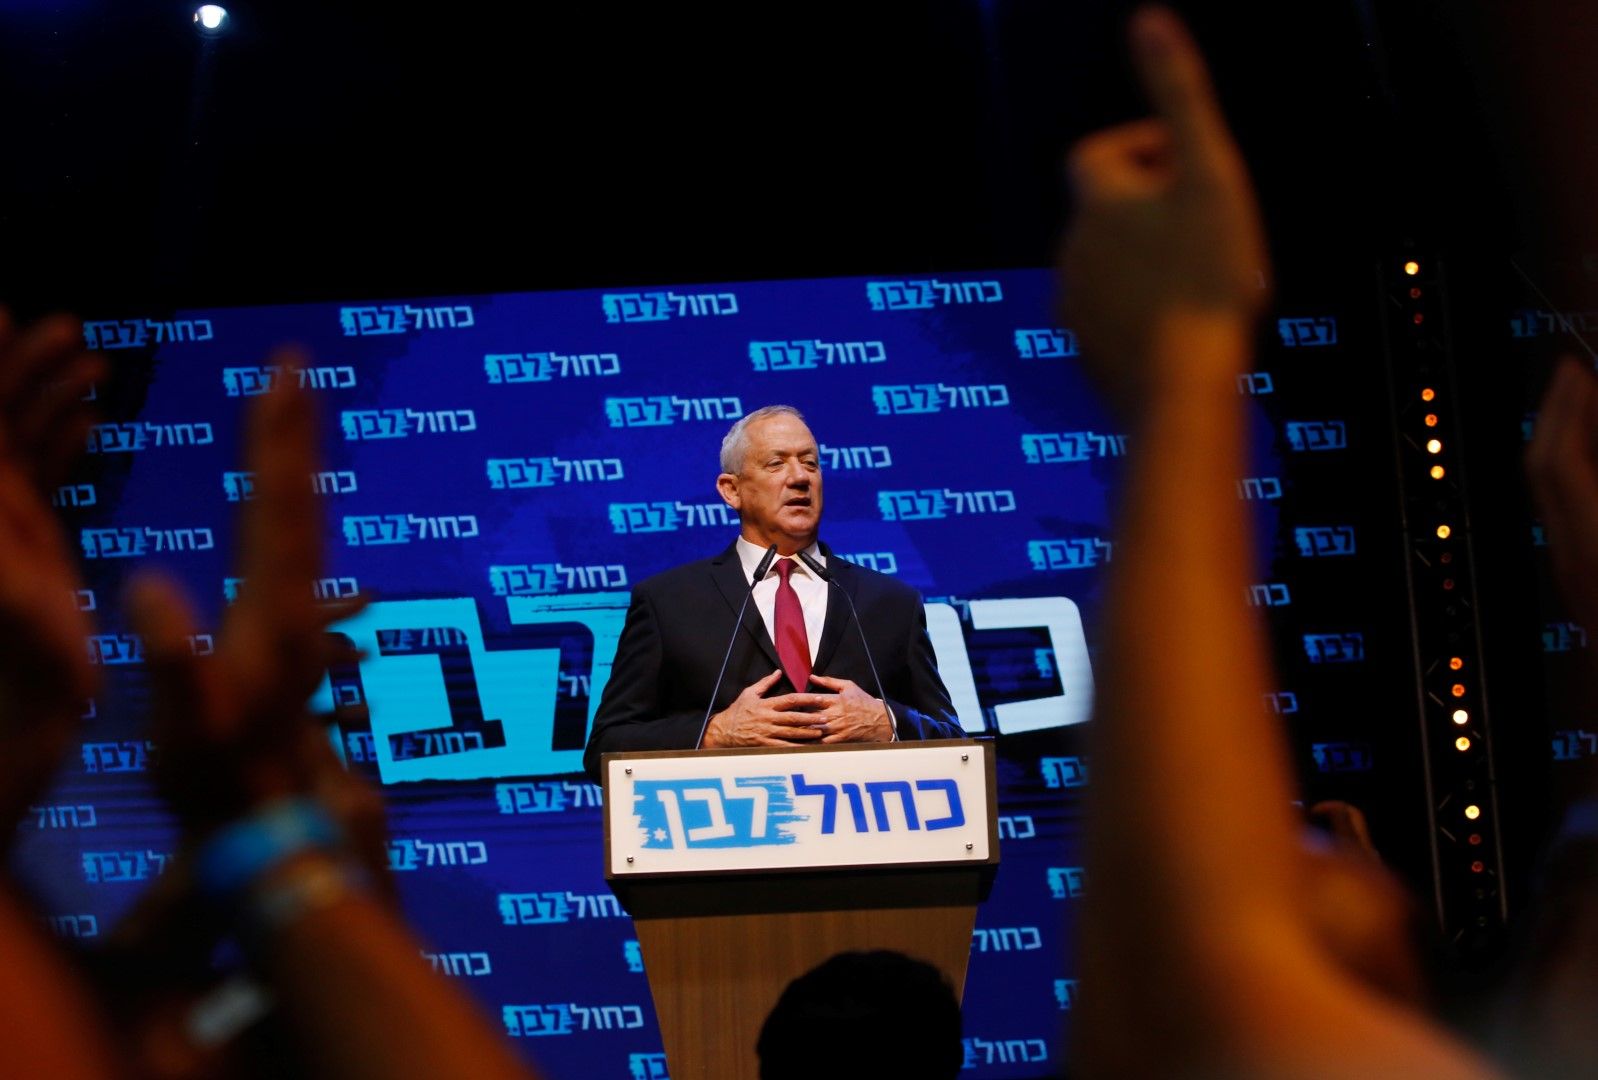 Бени Ганц - лидер на центристката партия "Синьо и бяло", в нощта след изборите